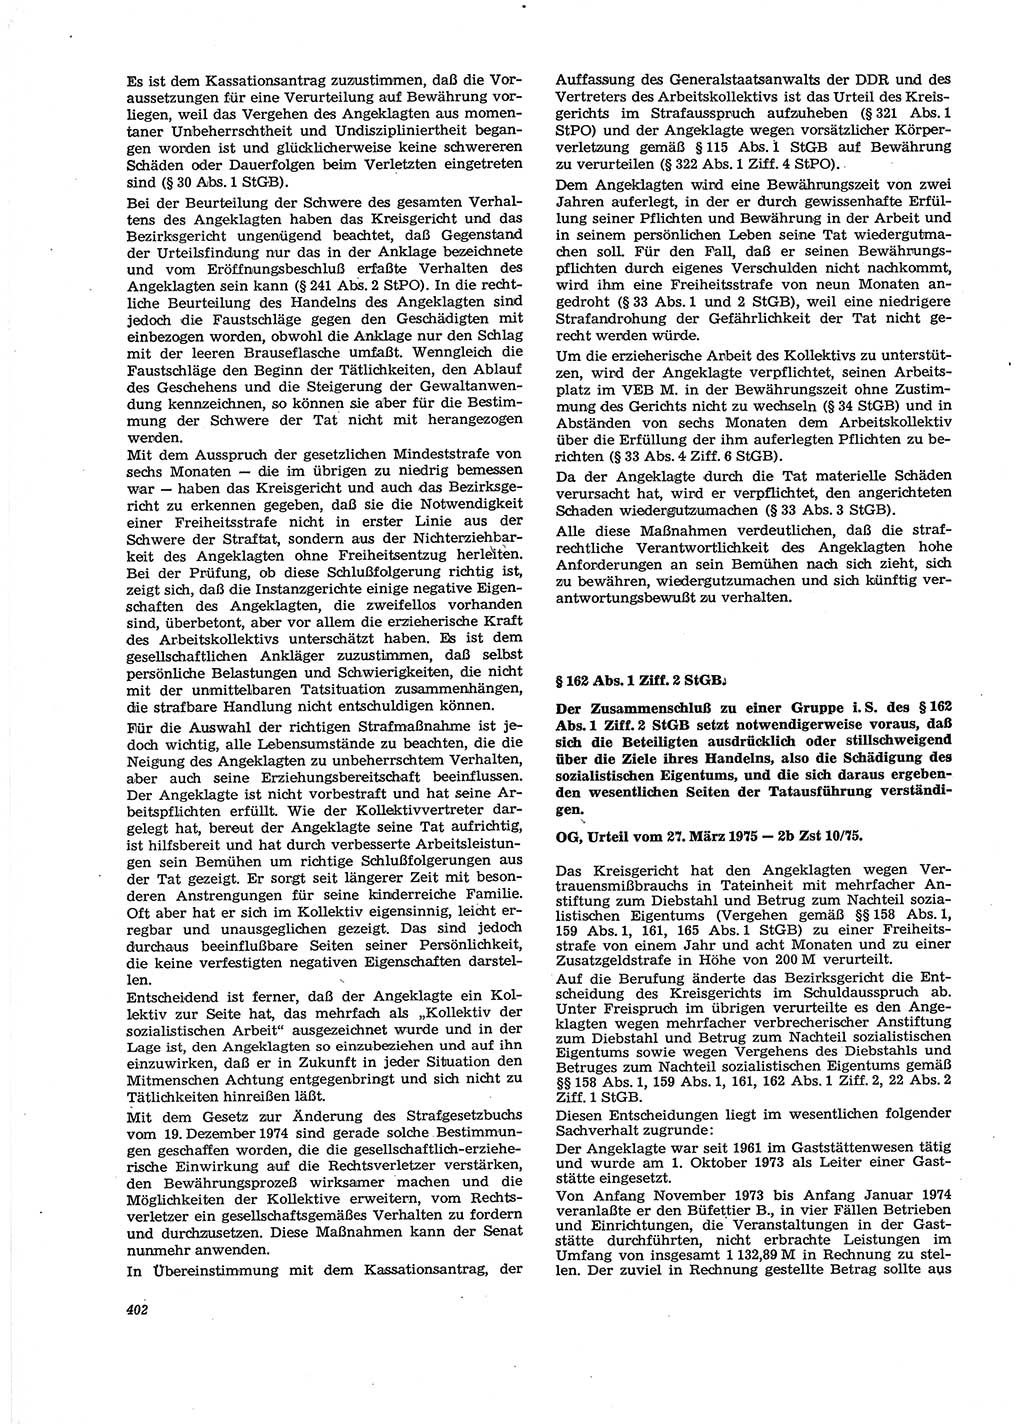 Neue Justiz (NJ), Zeitschrift für Recht und Rechtswissenschaft [Deutsche Demokratische Republik (DDR)], 29. Jahrgang 1975, Seite 402 (NJ DDR 1975, S. 402)